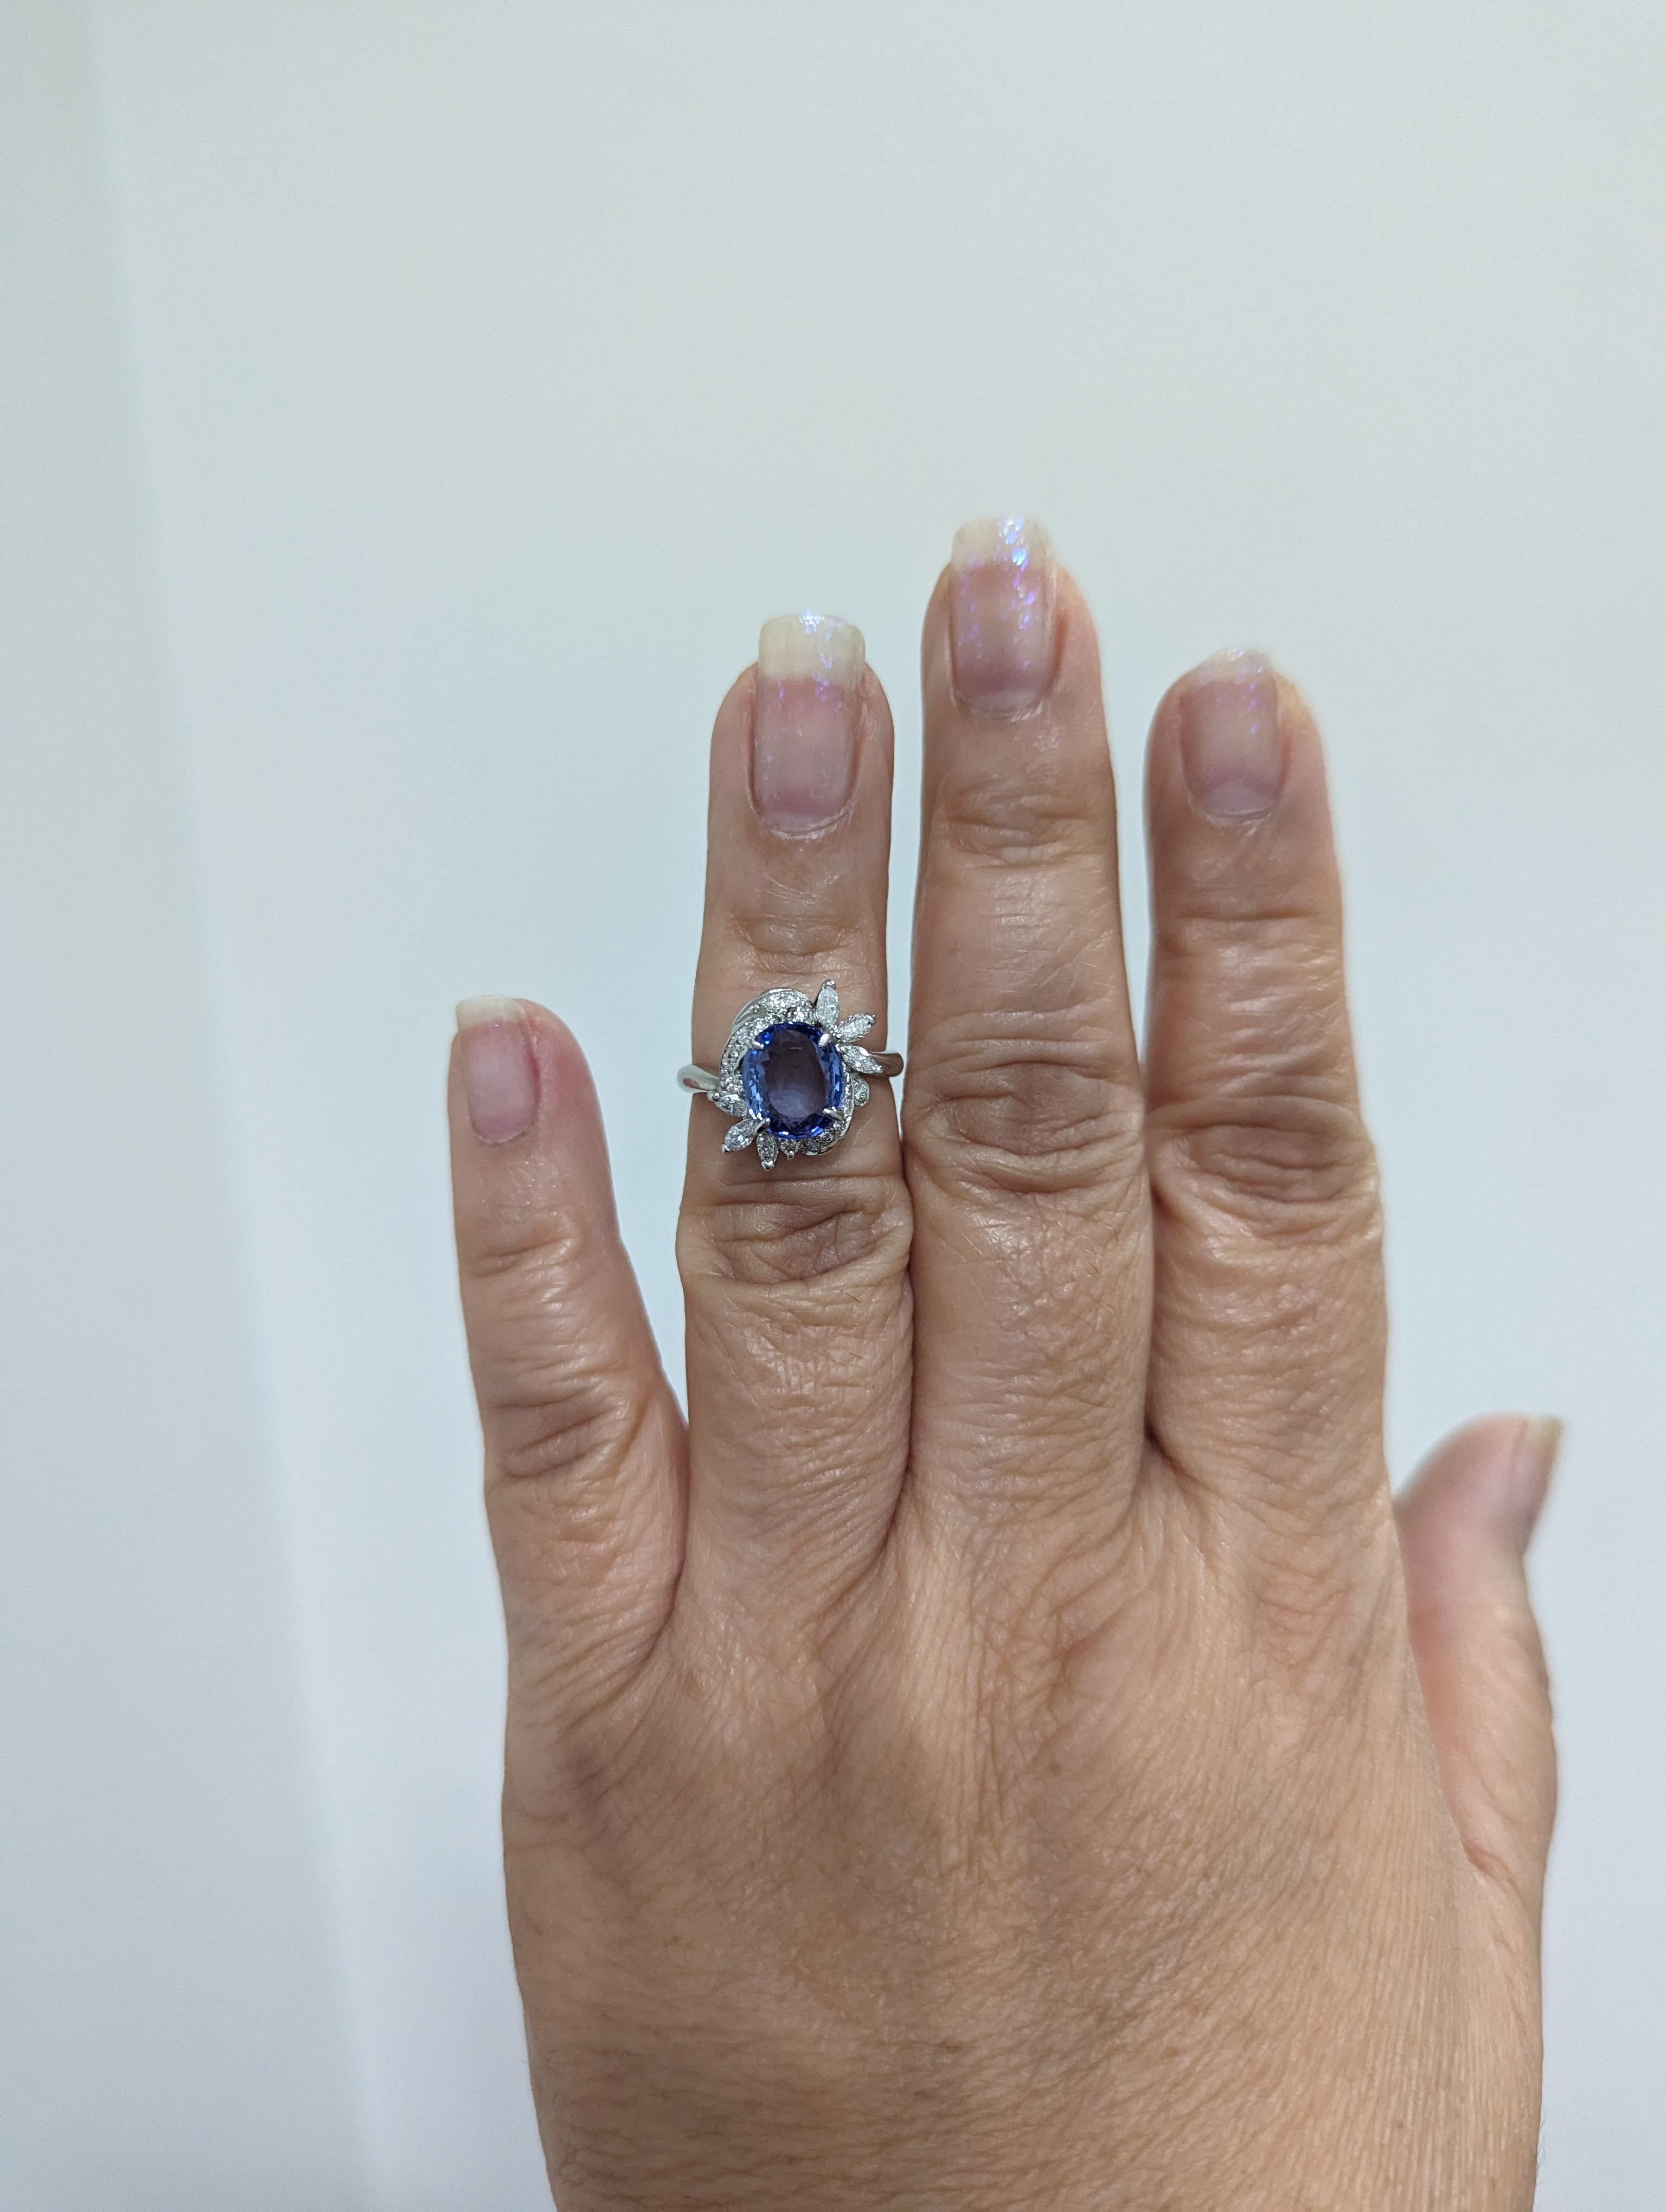 Magnifique ovale de saphir bleu du Sri Lanka non chauffé de 2,73 ct. avec 0,48 ct. de diamants blancs ronds et de forme marquise.  Fait à la main en platine.  Bague de taille 6.
Certificat GIA inclus.